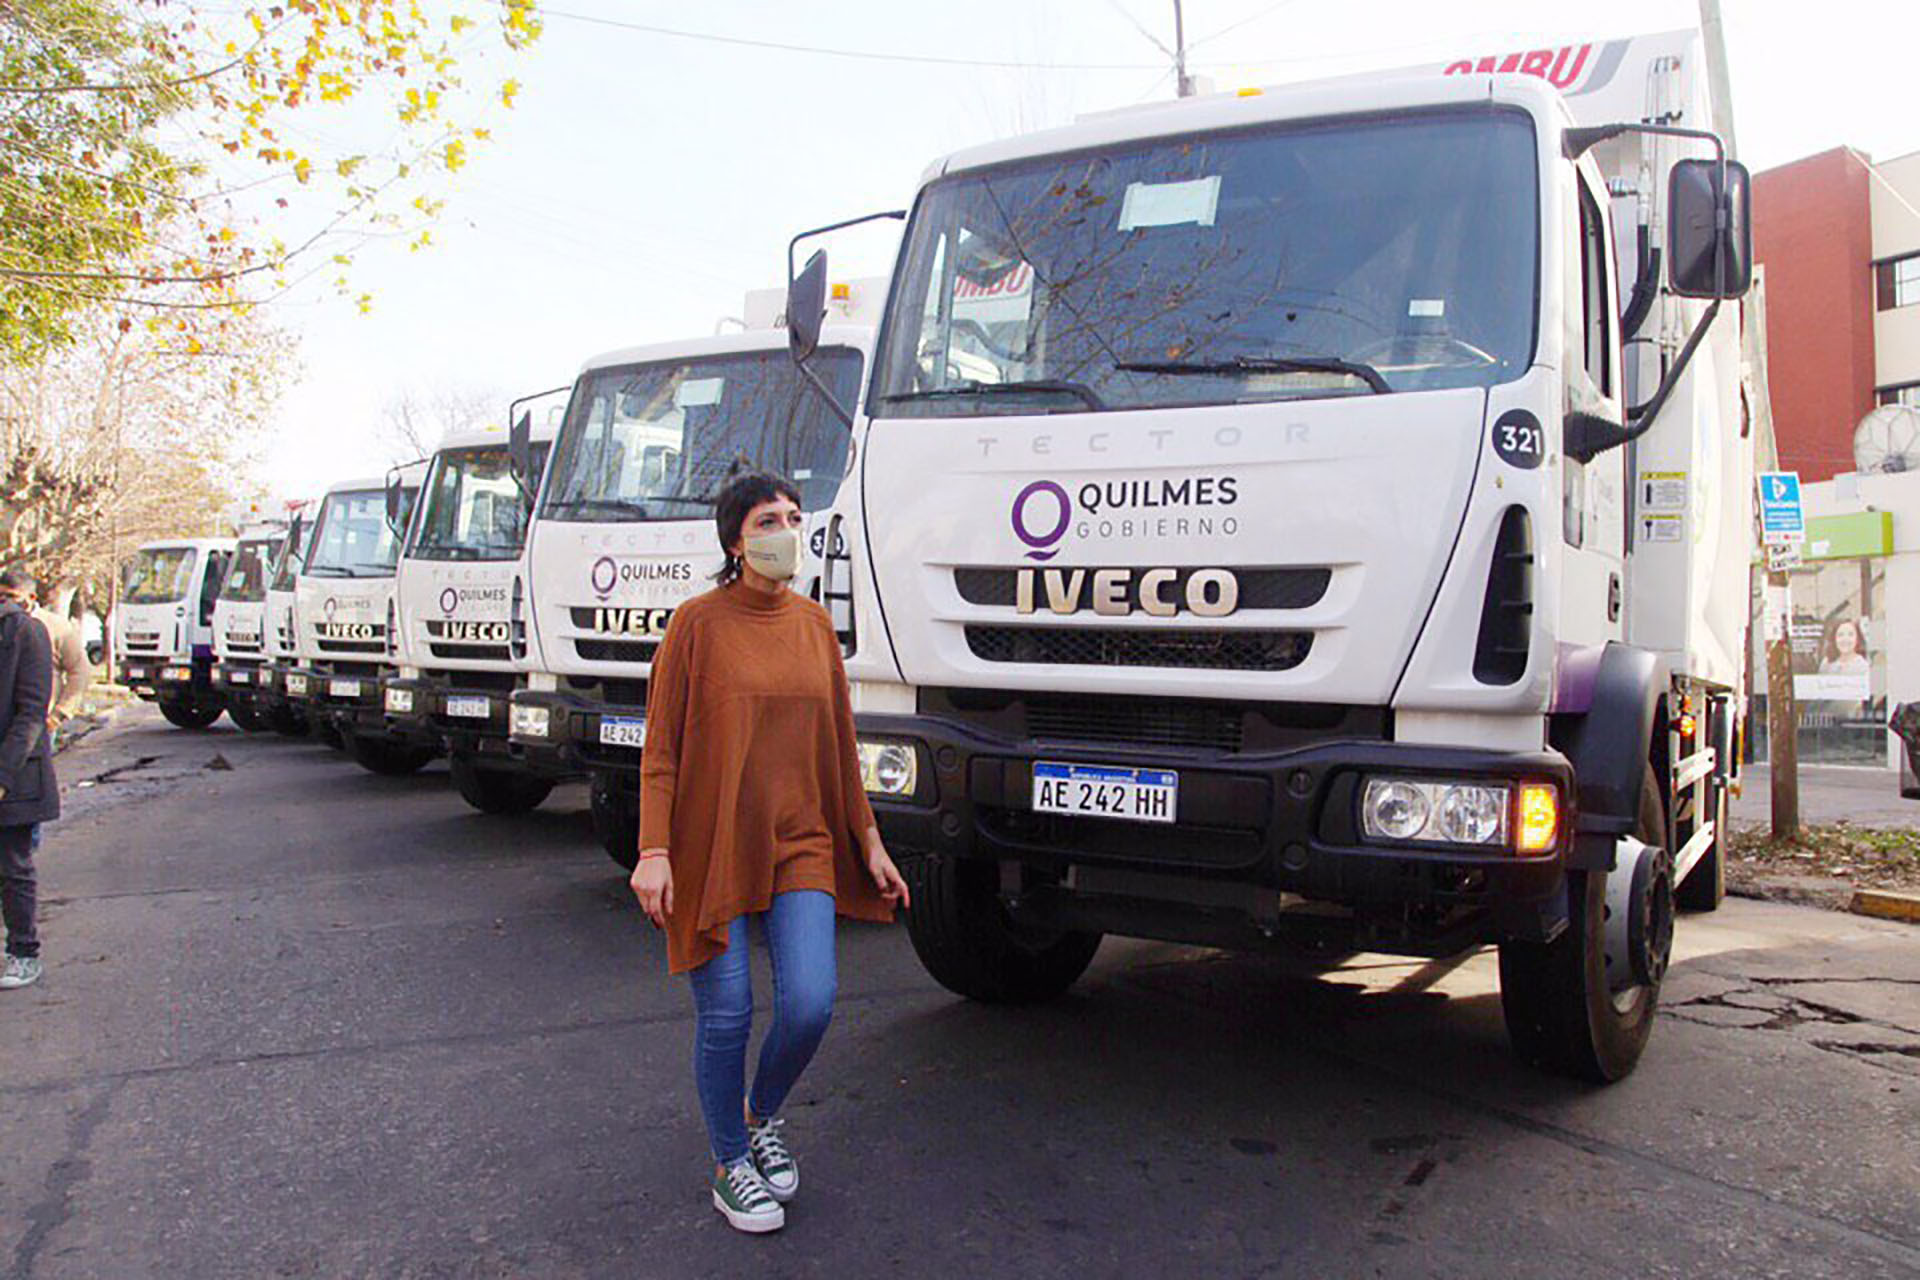 Quilmes Recibio 10 Camiones Nuevos Para El Sistema De Recoleccion De Residuos Infobae